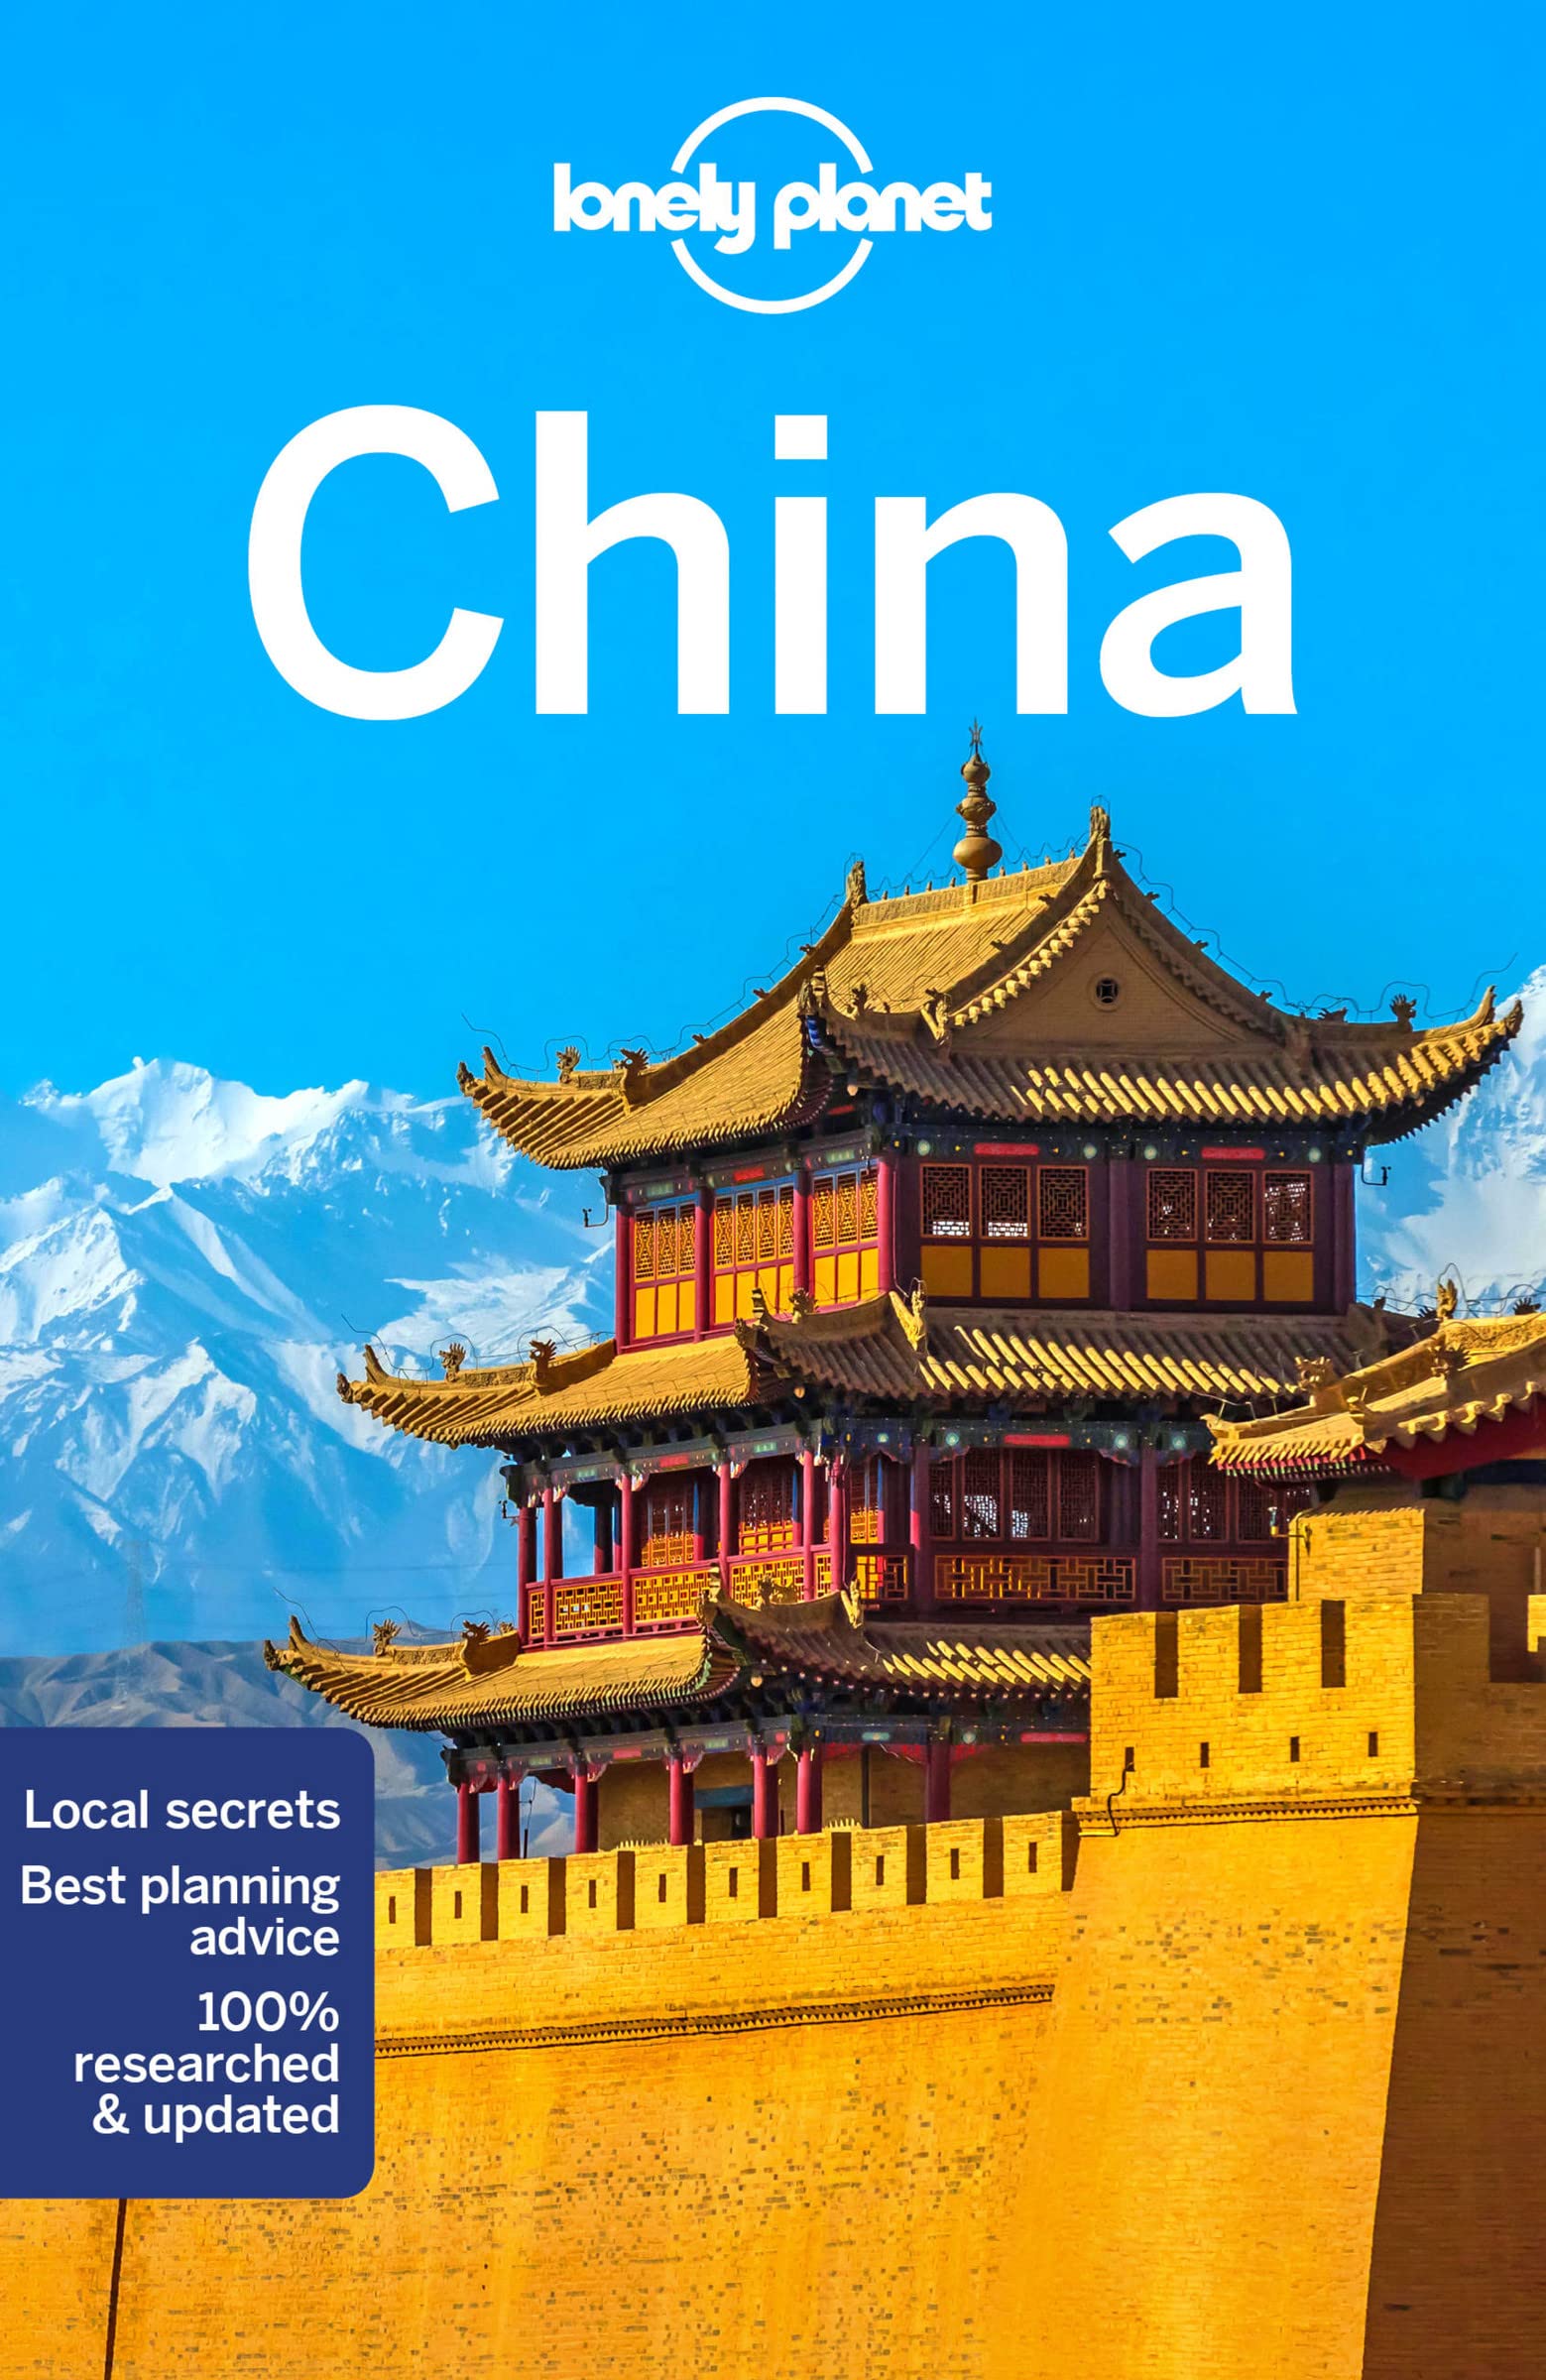 מדריך באנגלית LP סין